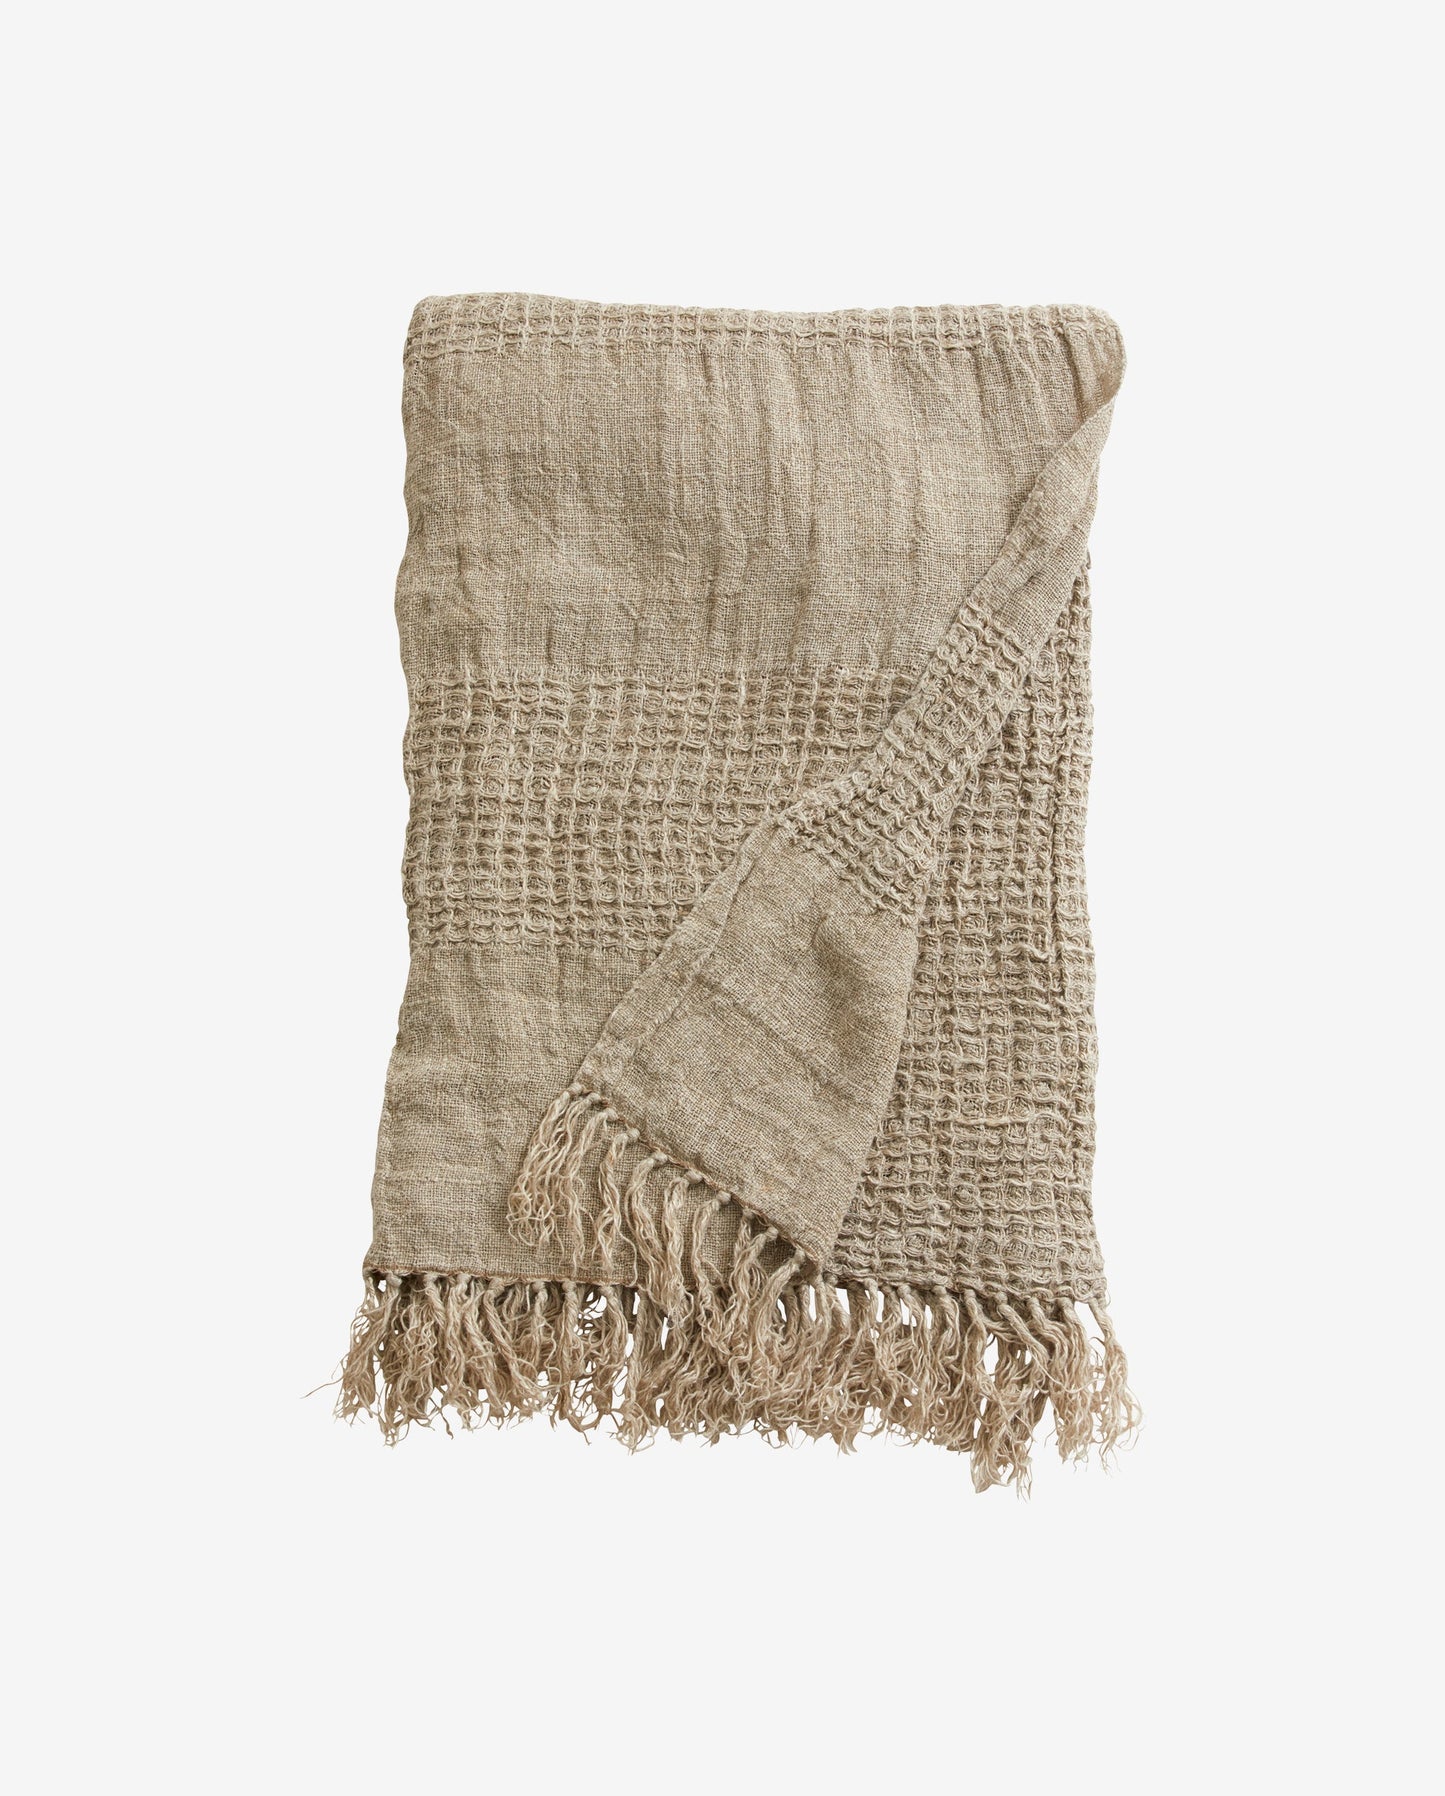 Nordal SATURN M towel w/fringes, linen, natural